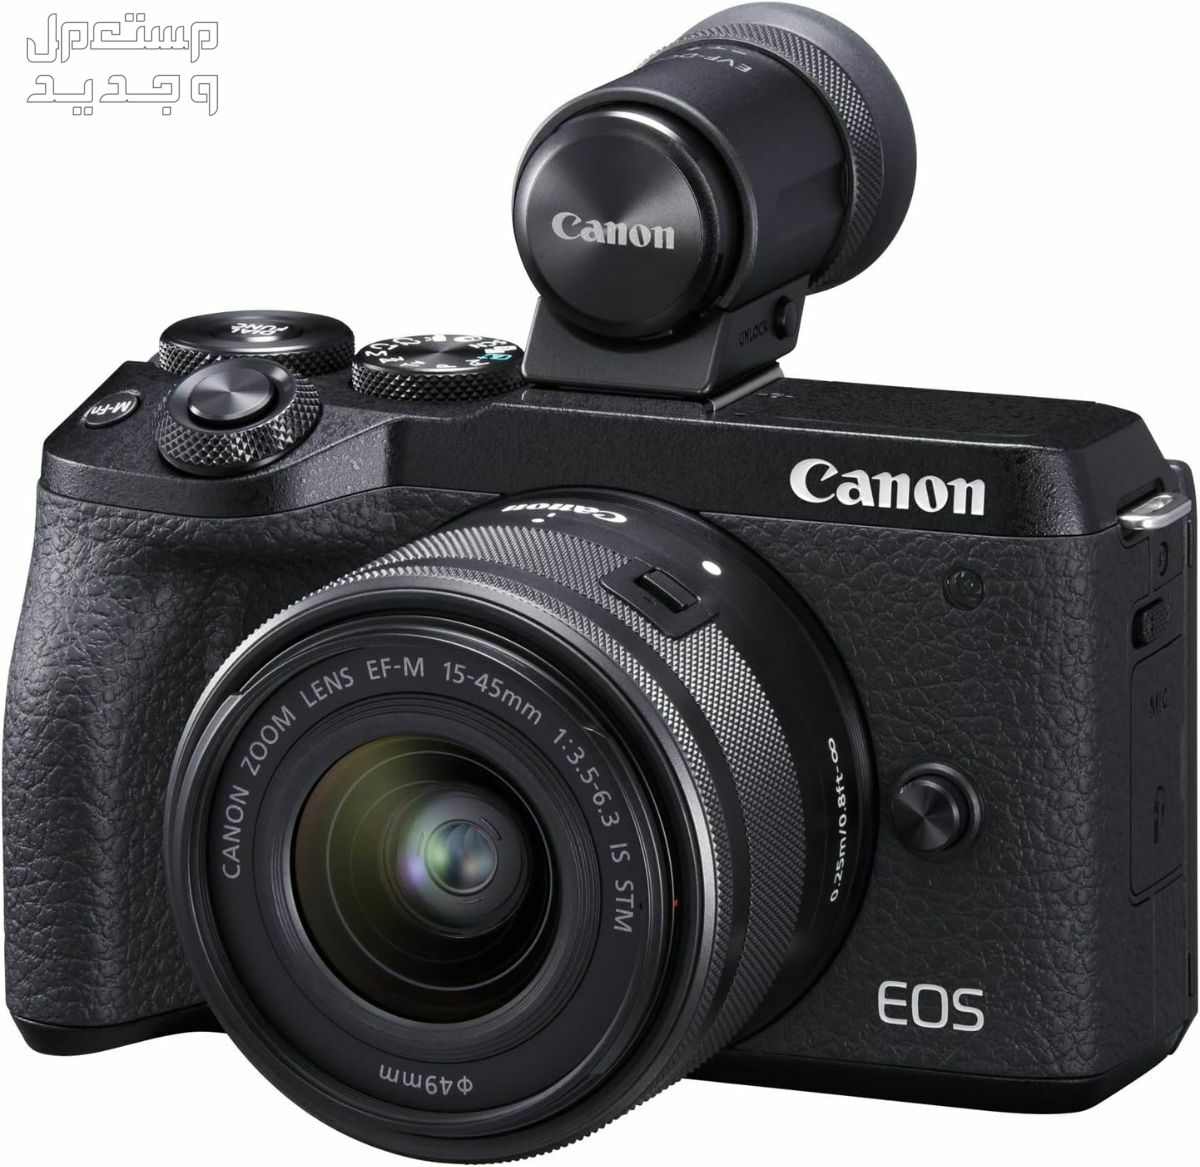 سعر ومميزات ومواصفات أرخص 5 كاميرات تصوير من كانون في اليَمَن كاميرا Canon EOS M6 Mark II